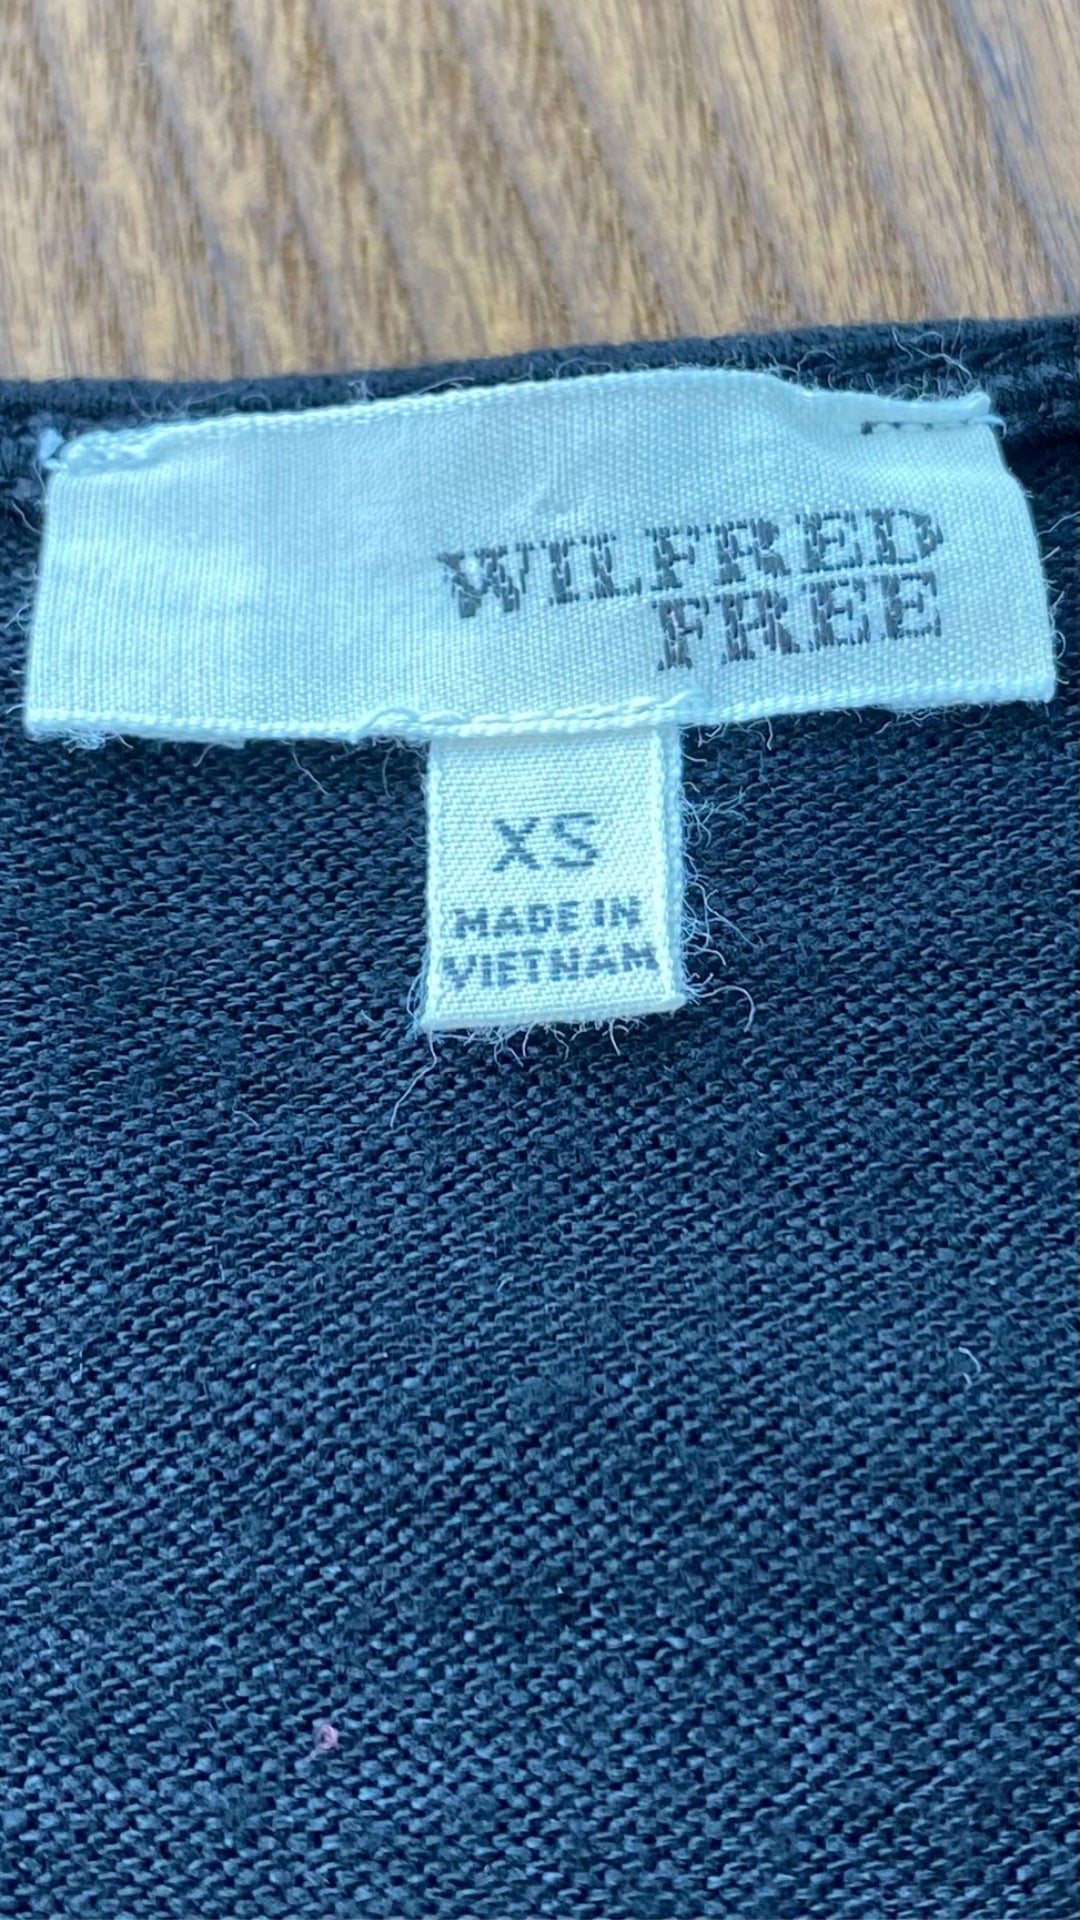 Robe ample en tricot noir Wilfred Free de Aritzia, taille xs (peut aussi faire small). Vue de l'étiquette de marque et taille.